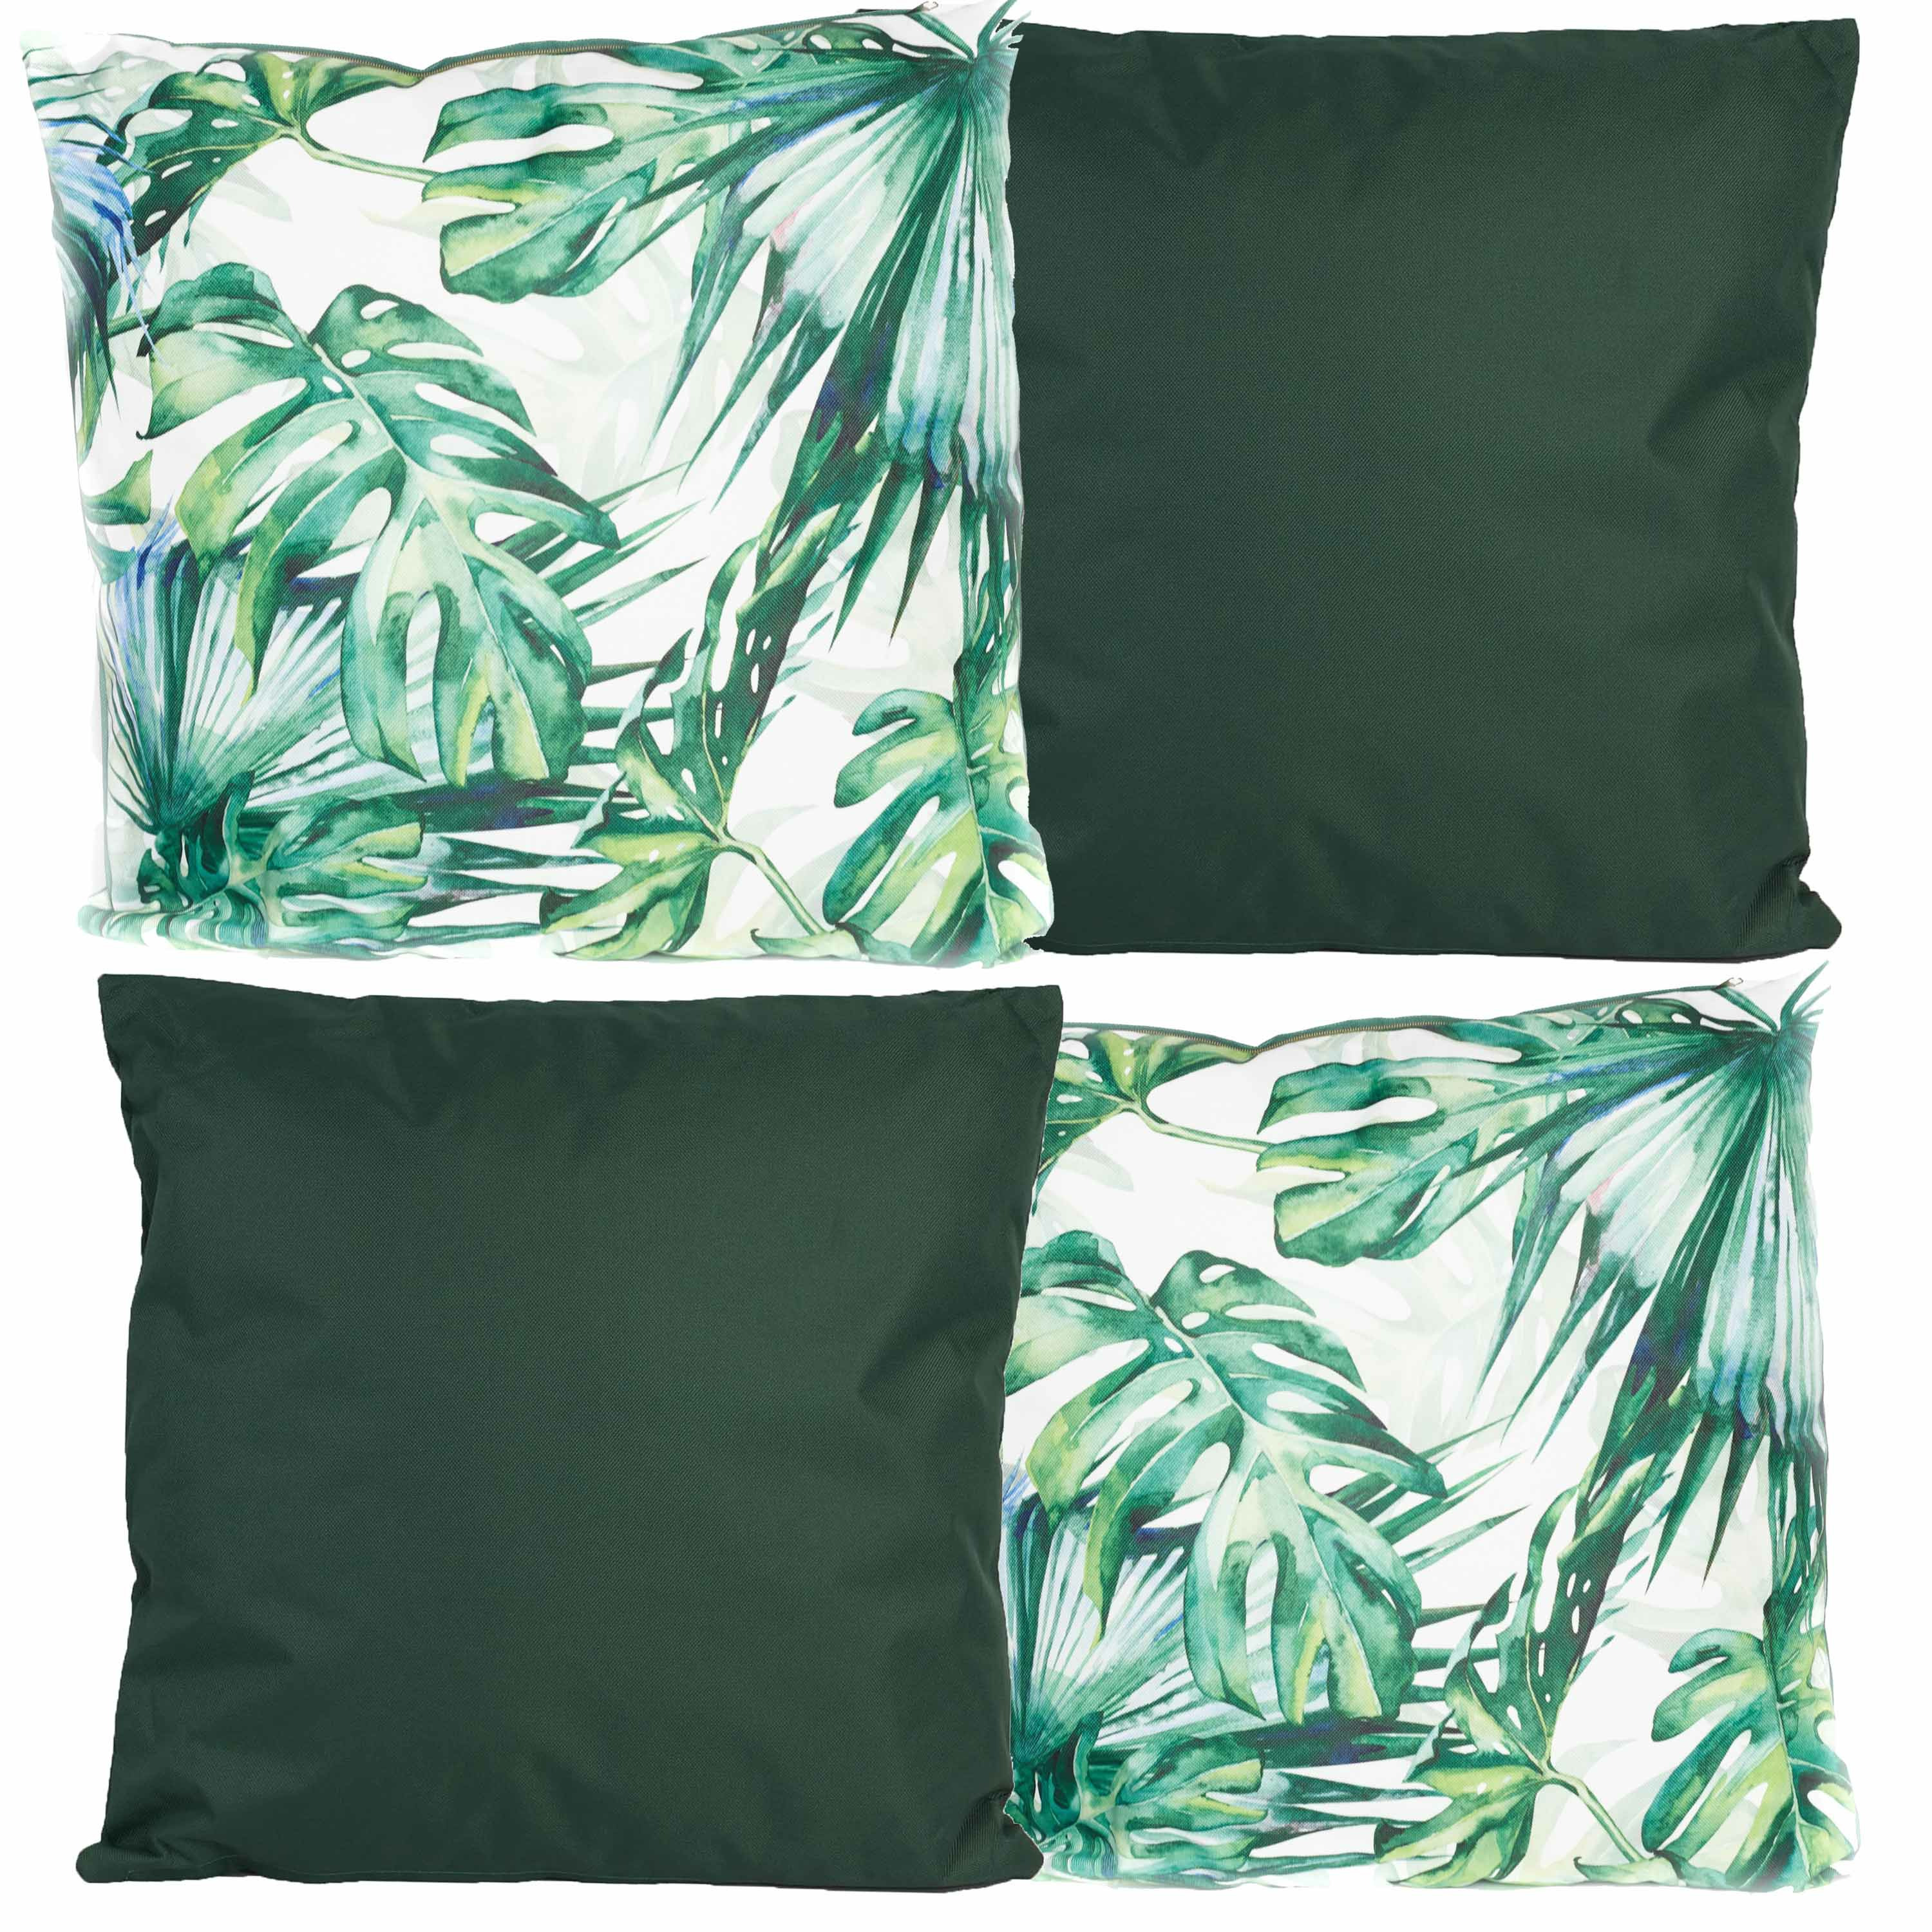 Bank-tuin kussens set voor binnen-buiten 4x stuks groen-palm print 45 x 45 cm